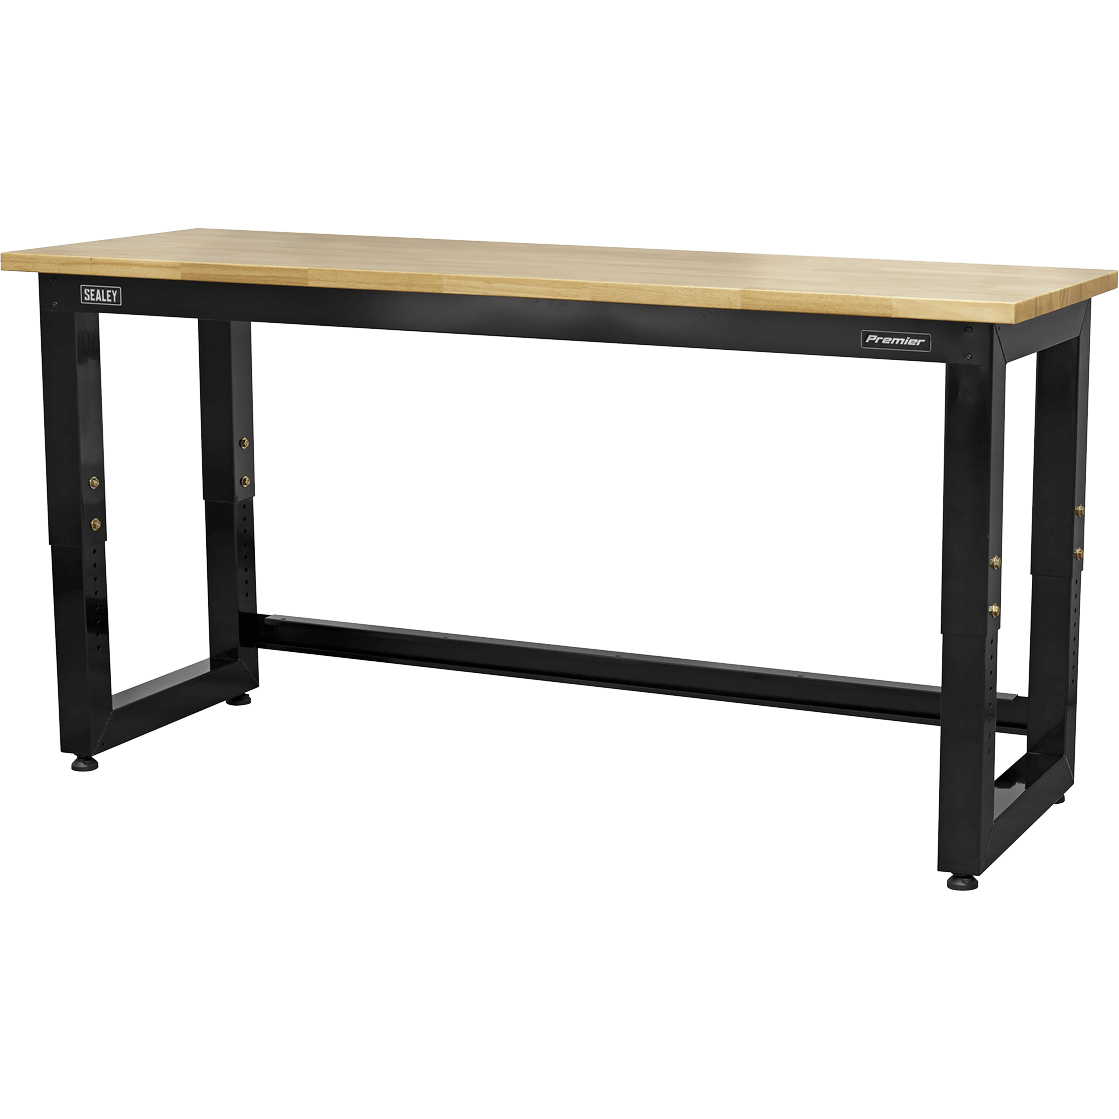 Sealey Heavy Duty Adjustable Wooden Worktop Workbench 1.83m